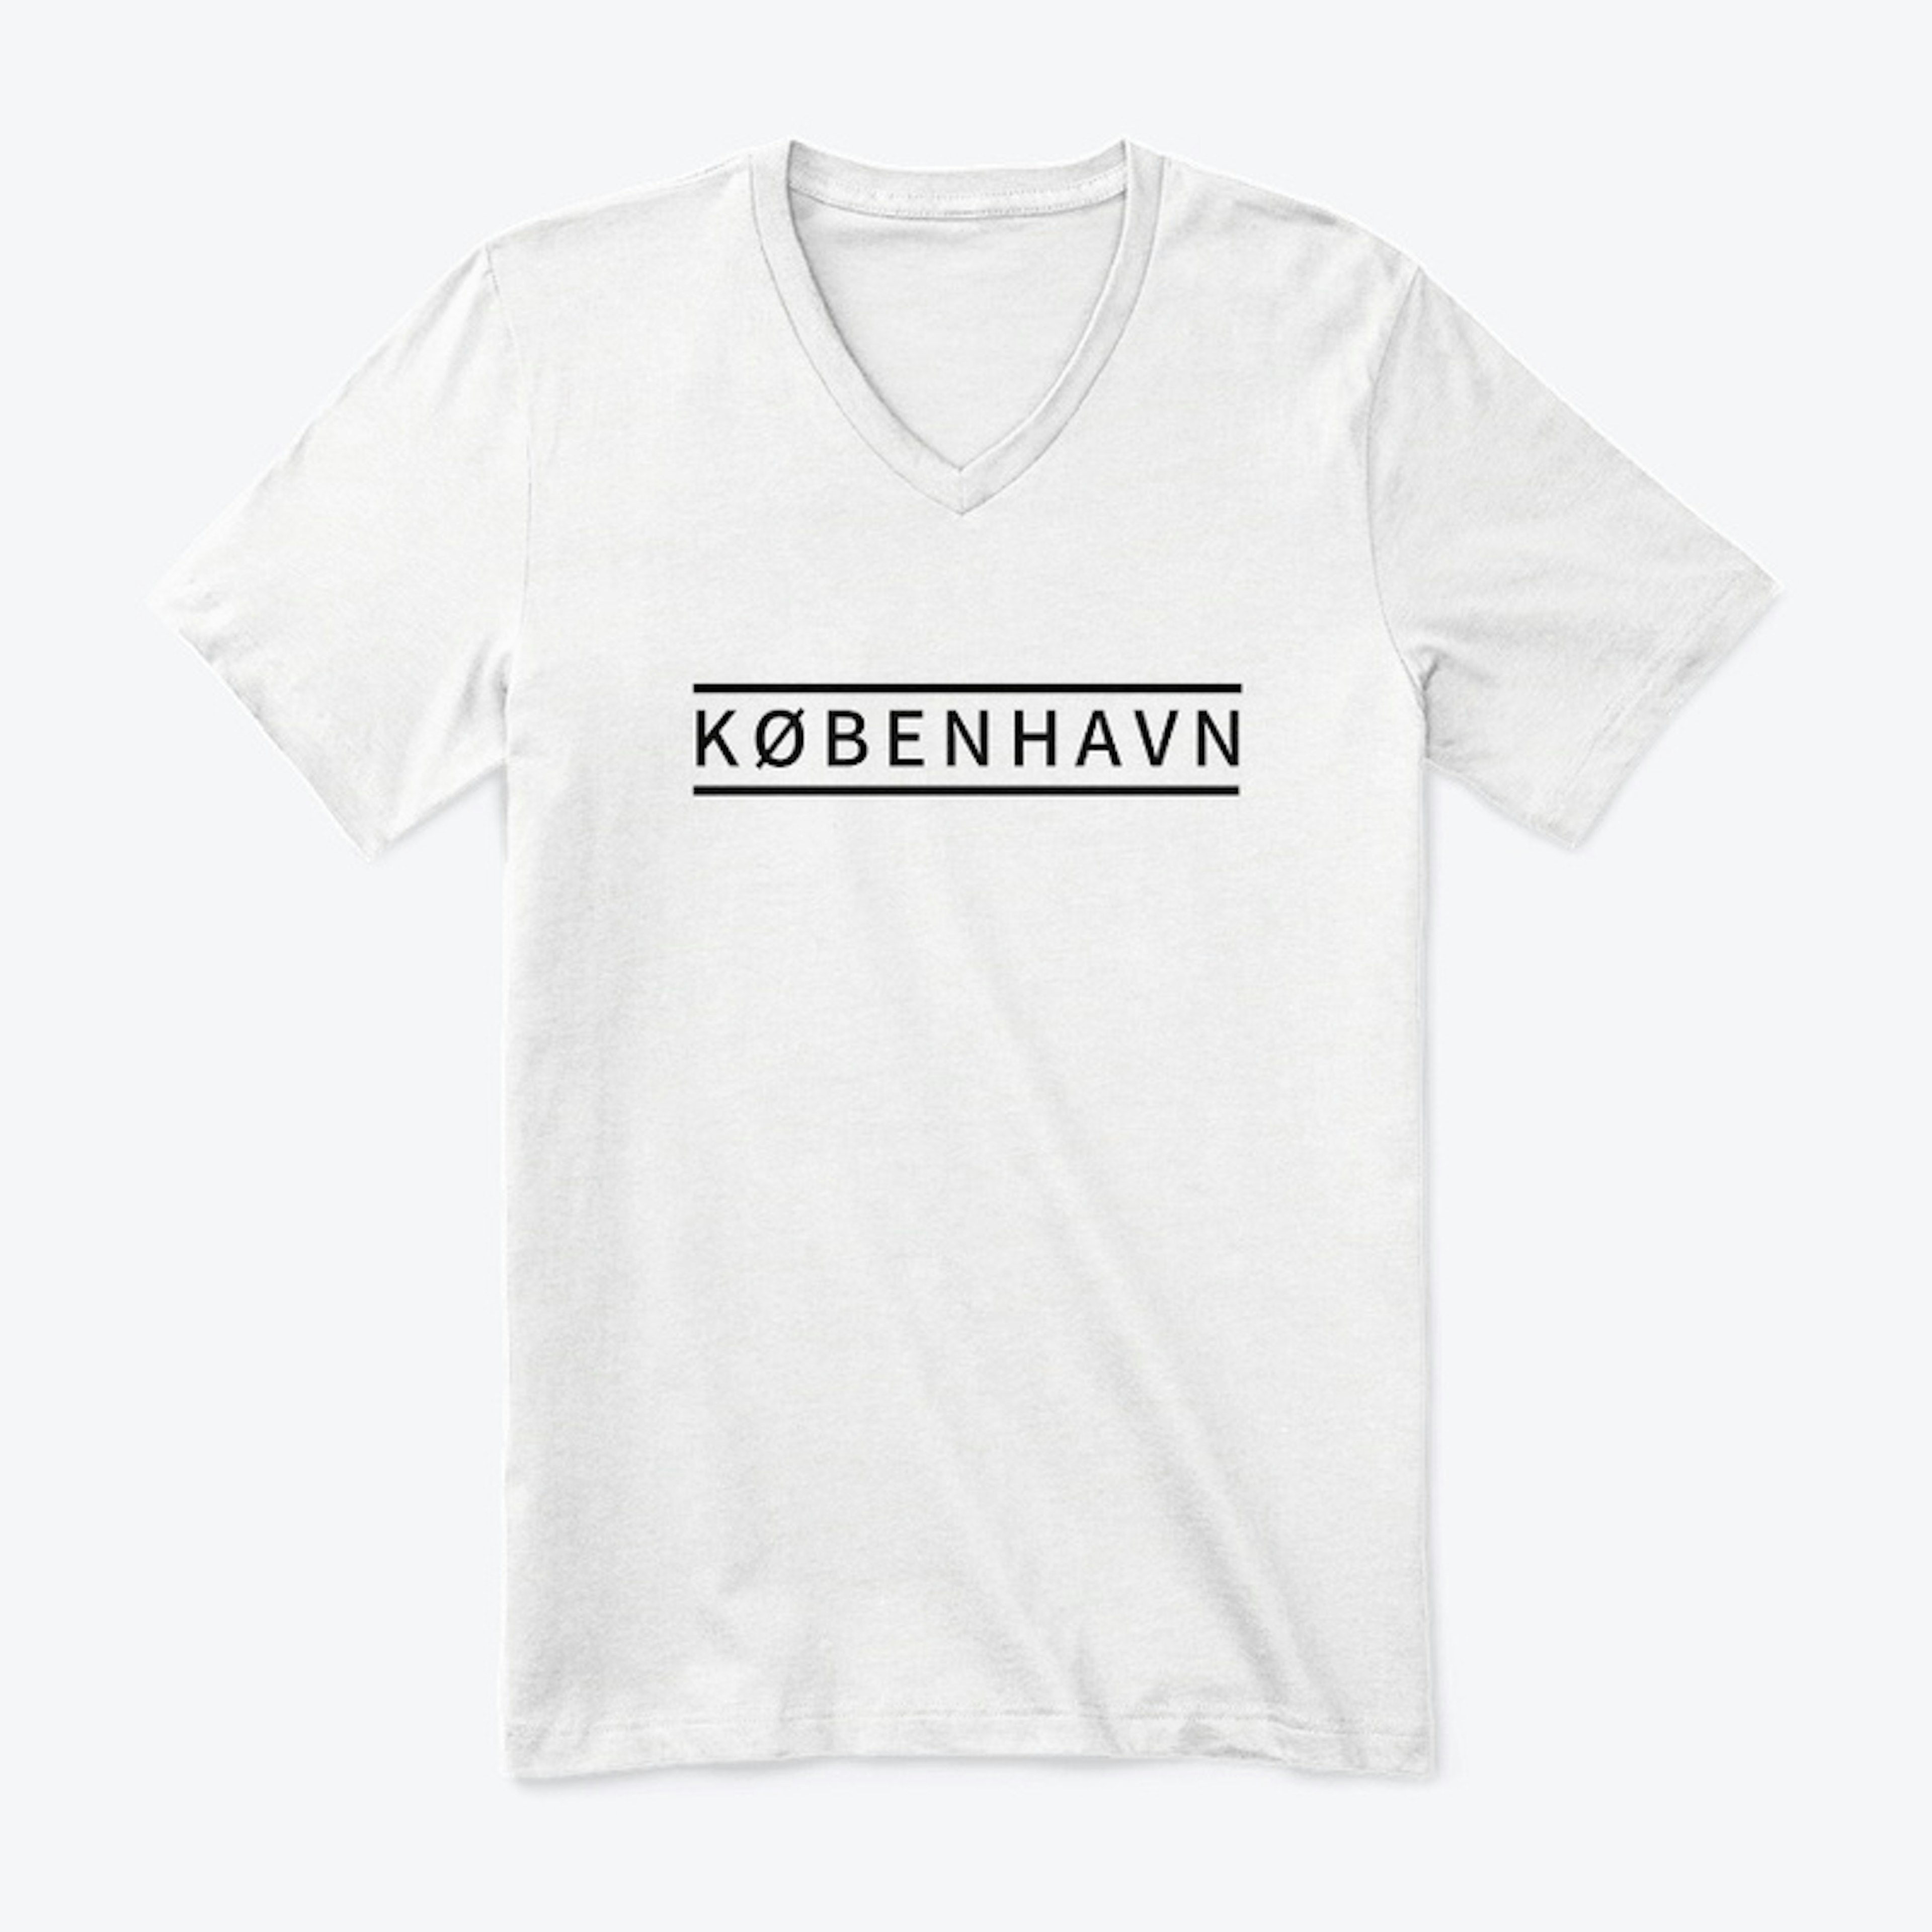 København t-shirt